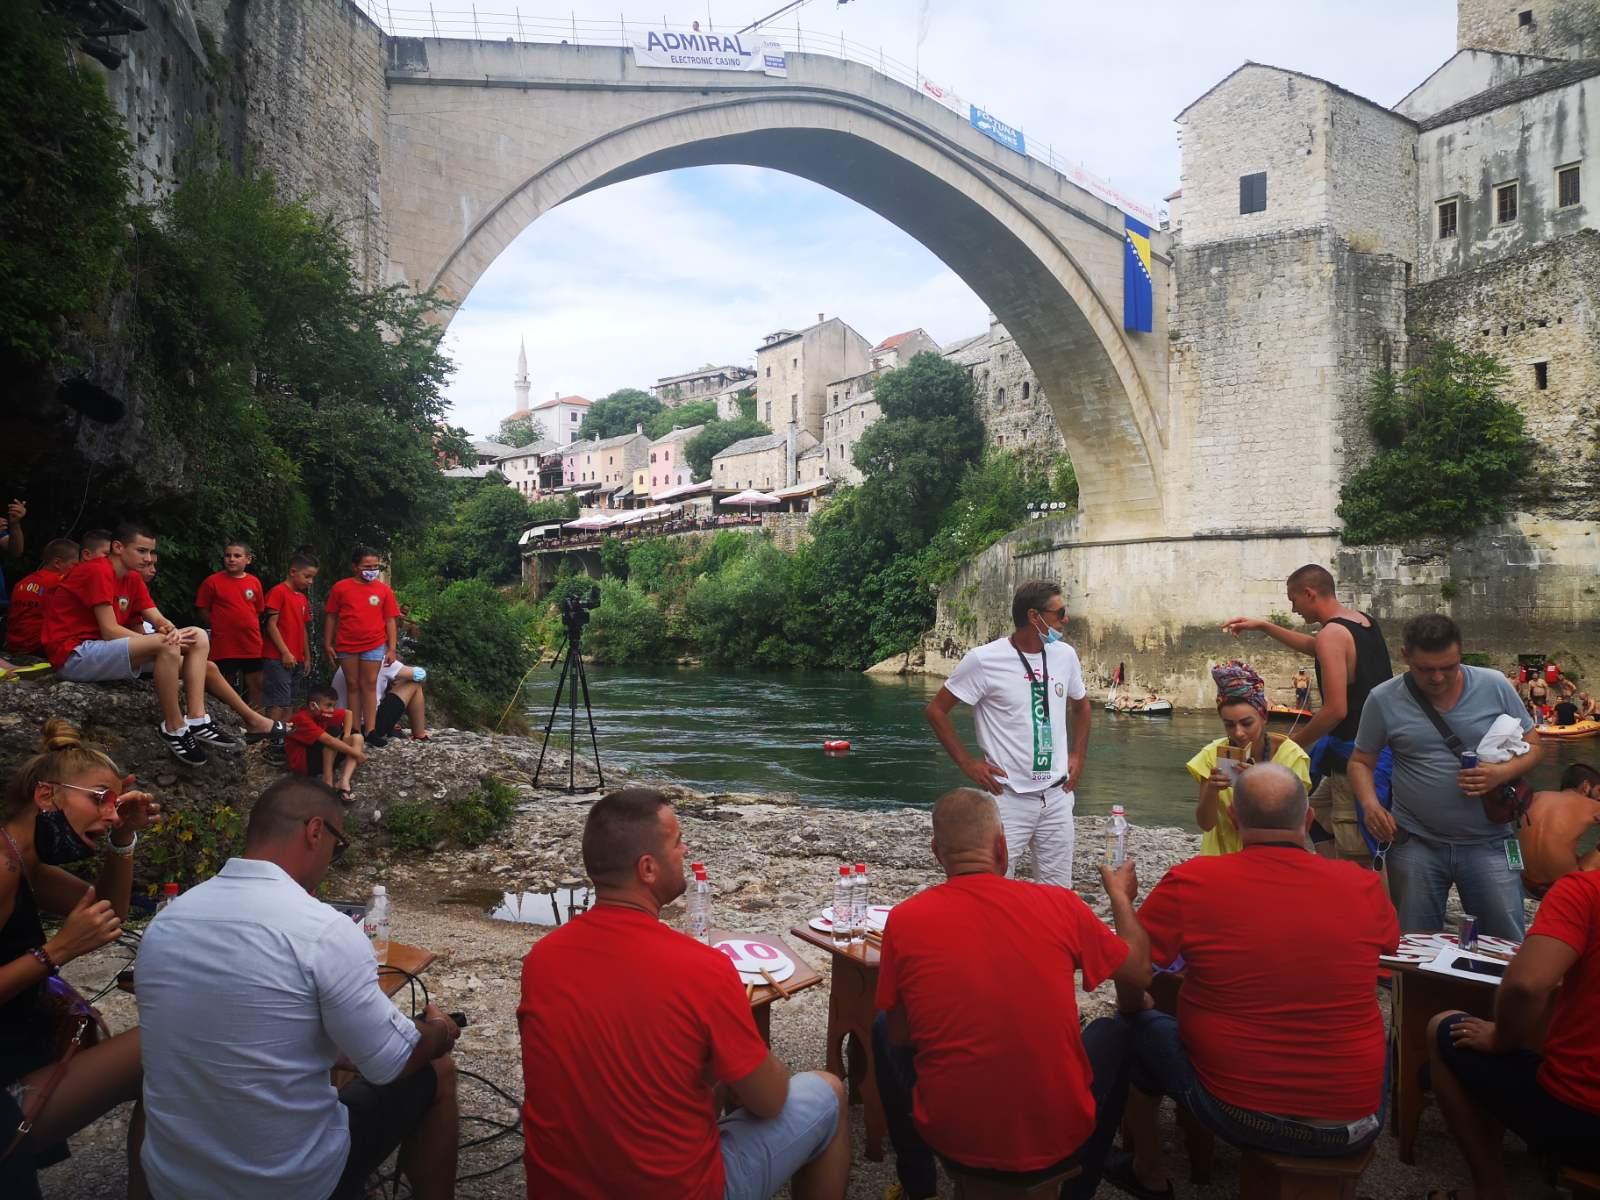 Uskoro će početi skokovi sa Starog mosta u Mostaru - Avaz